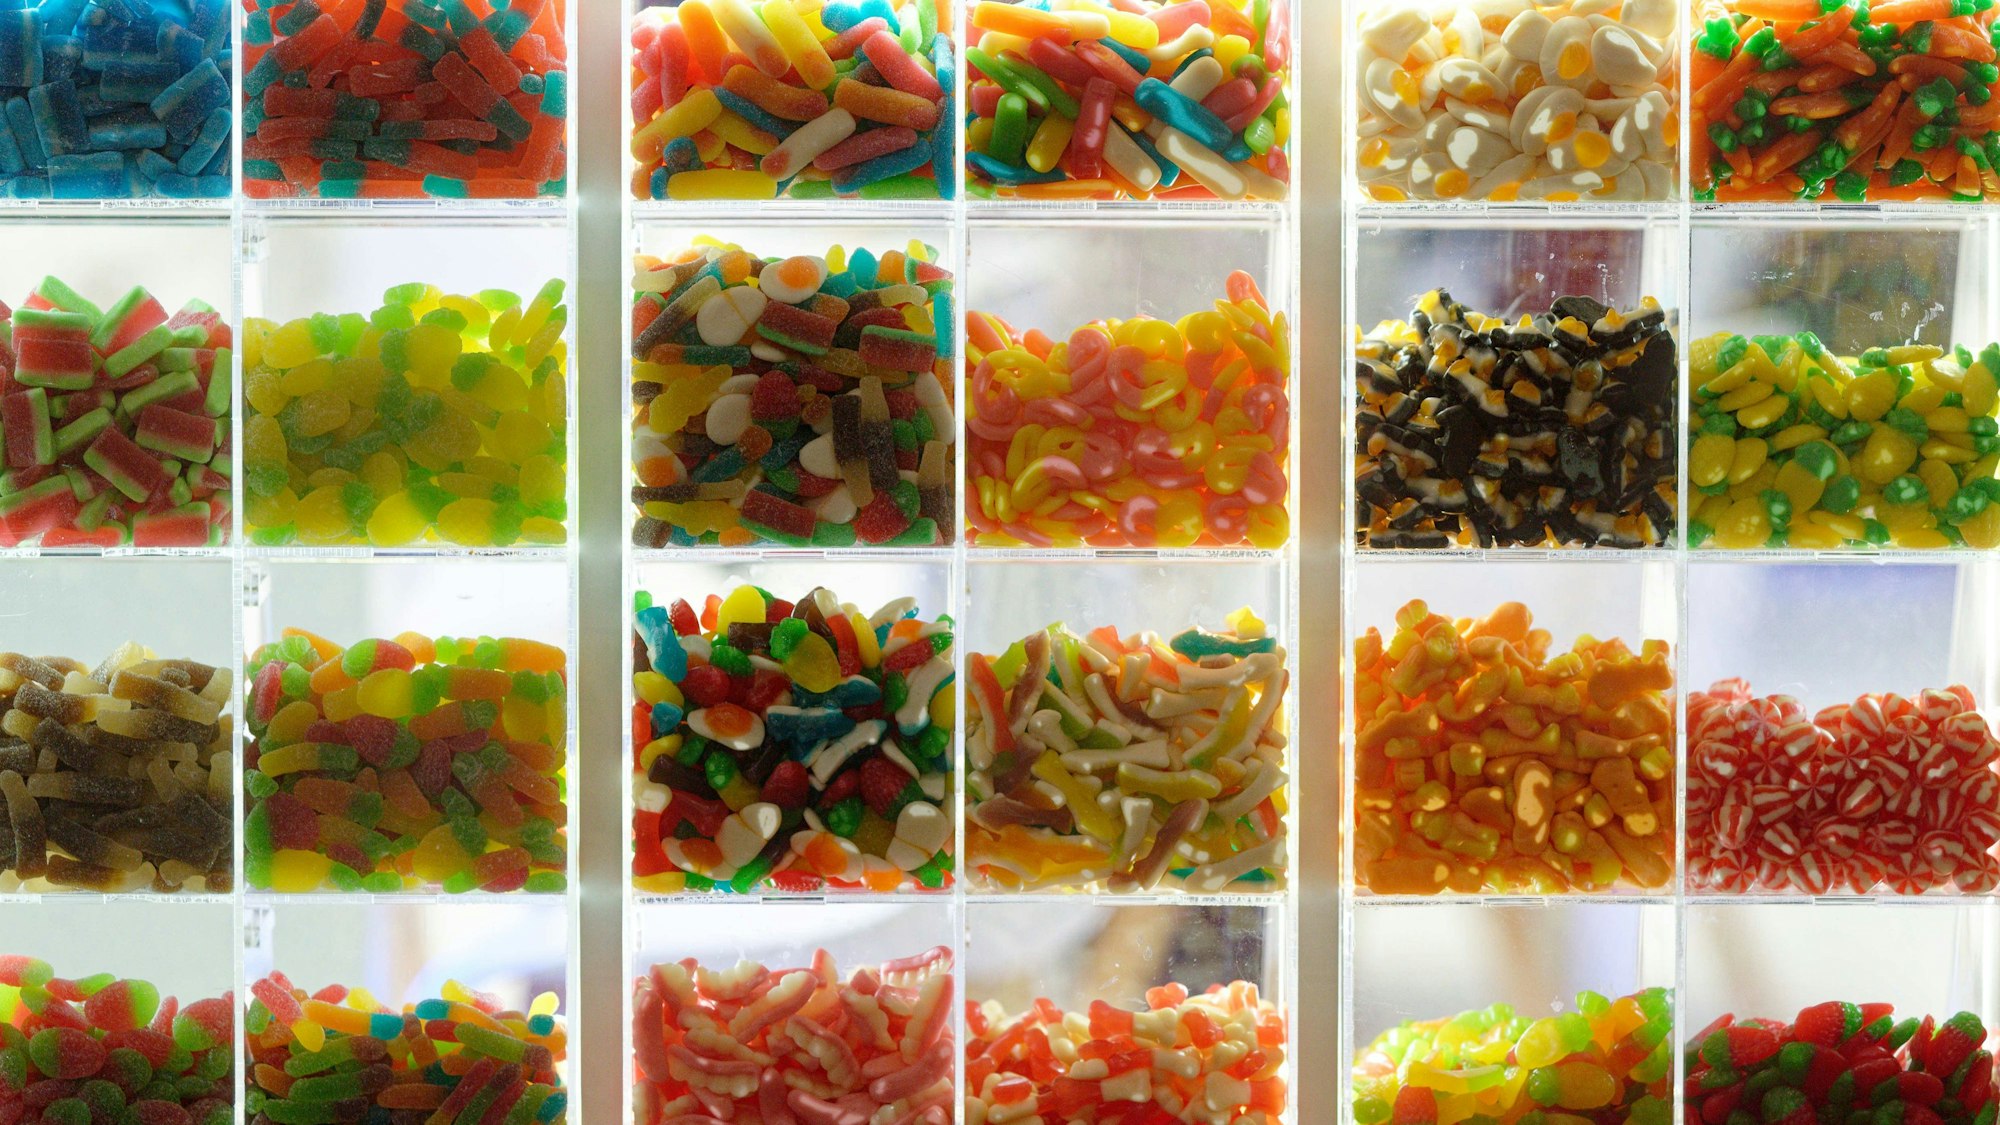 Bunt, lecker und mit Folgen: Süßigkeiten verändern das Gehirn.